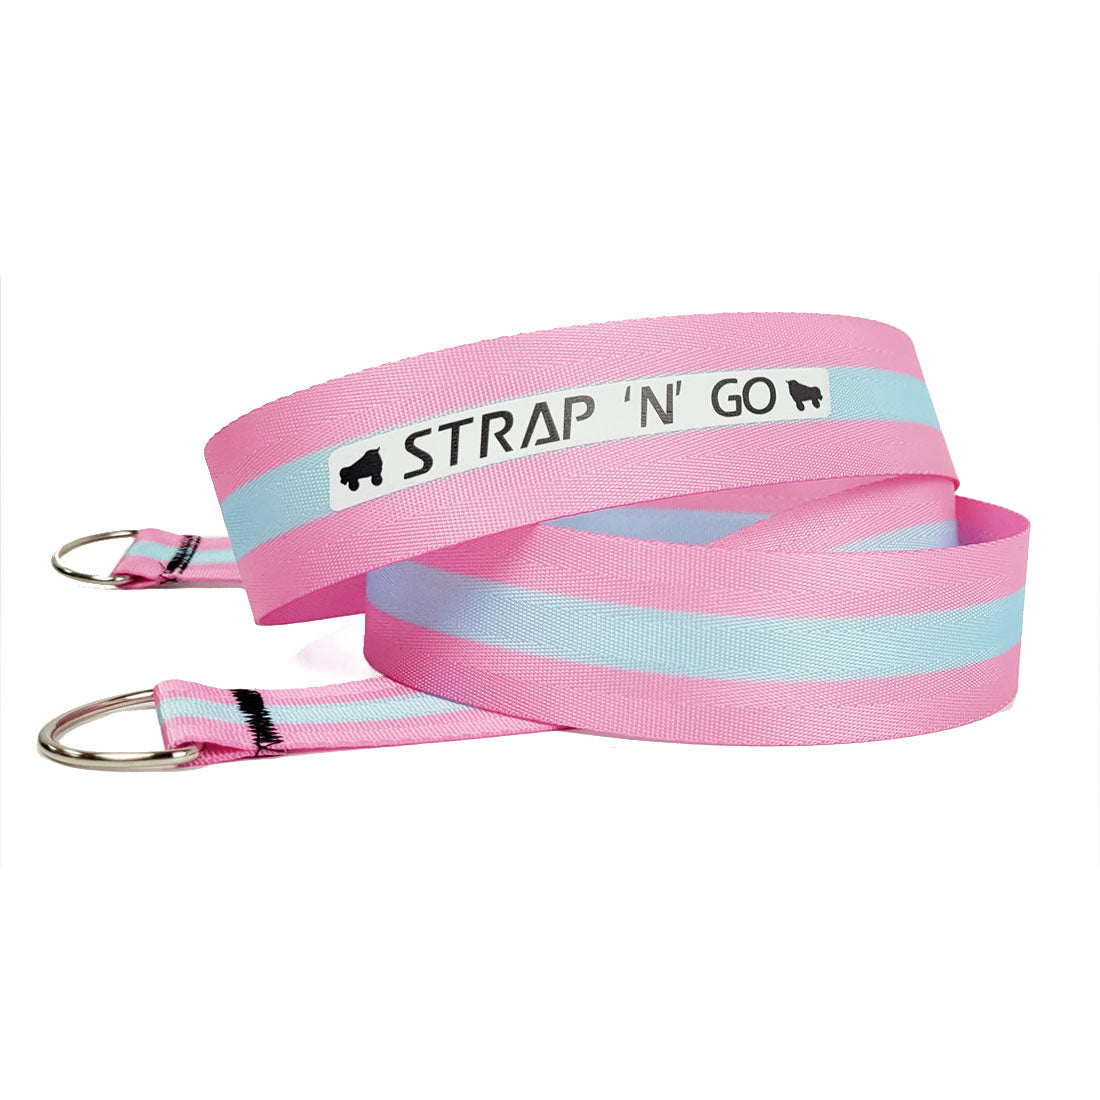 Strap N Go Skate Noose/Leash - Patterns Stripe Pink/Blue Roller Skate Accessories